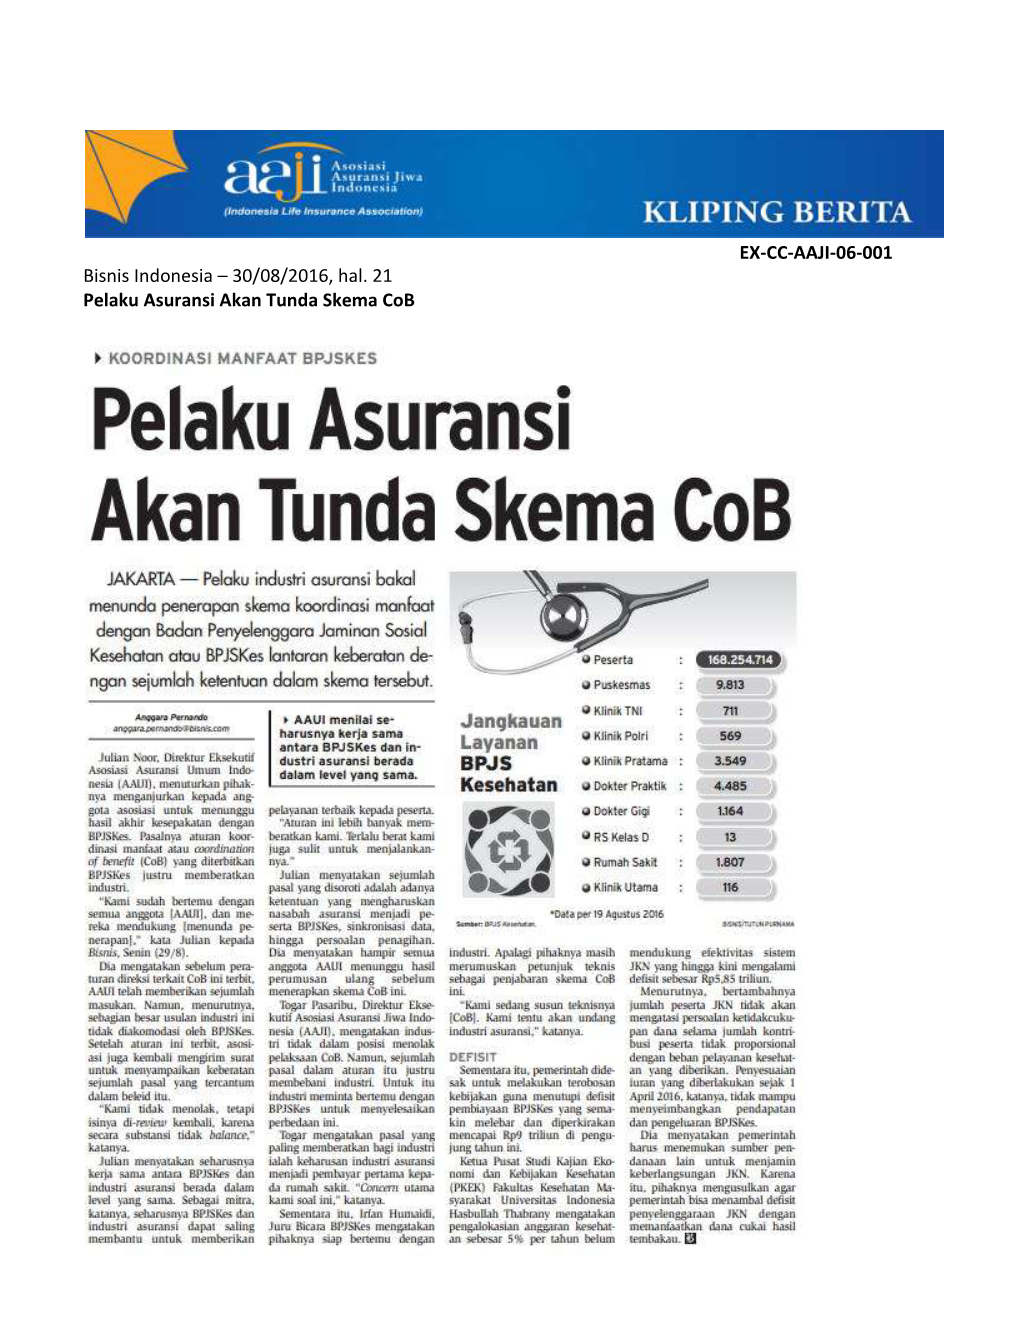 Bisnis Indonesia – 30/08/2016, Hal. 21 Pelaku Asuransi Akan Tunda Skema Cob EX-CC-AAJI-06-001